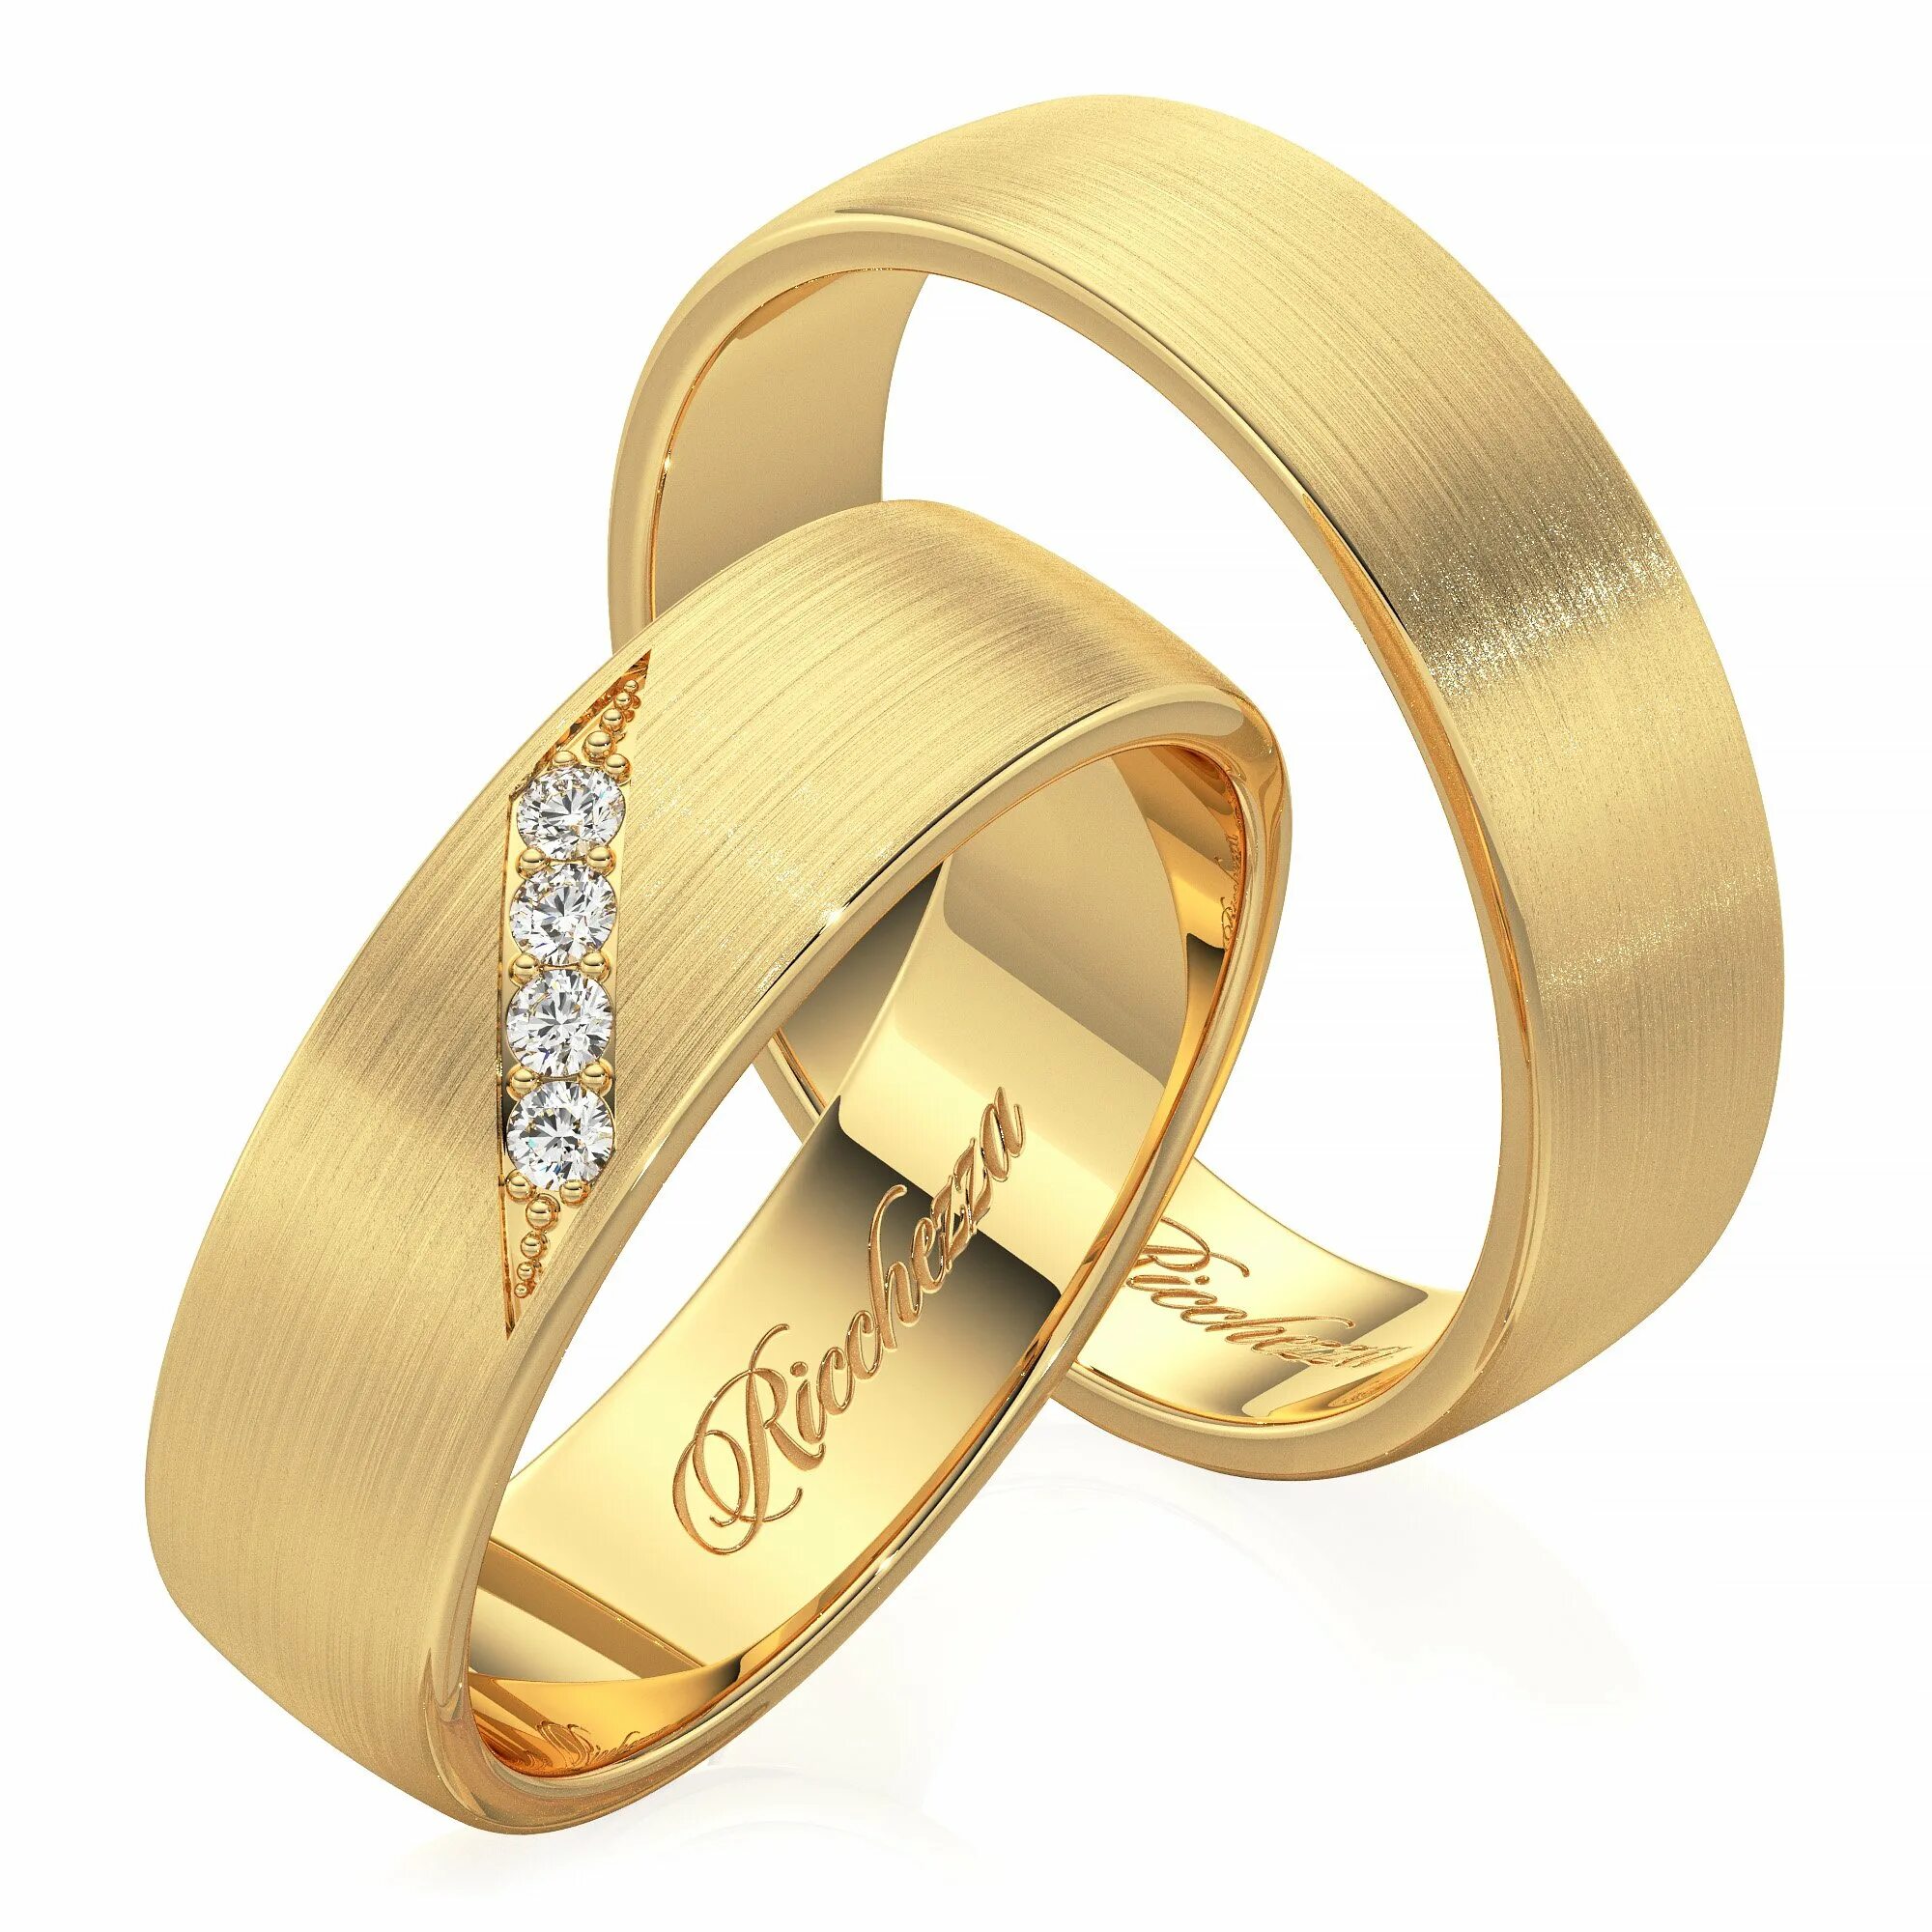 Кольца обручальные парные золотые Адамас. Обручальные кольца 585. Обручальные кольца парные 585. Золотые кольца обручалки 585 пробы.